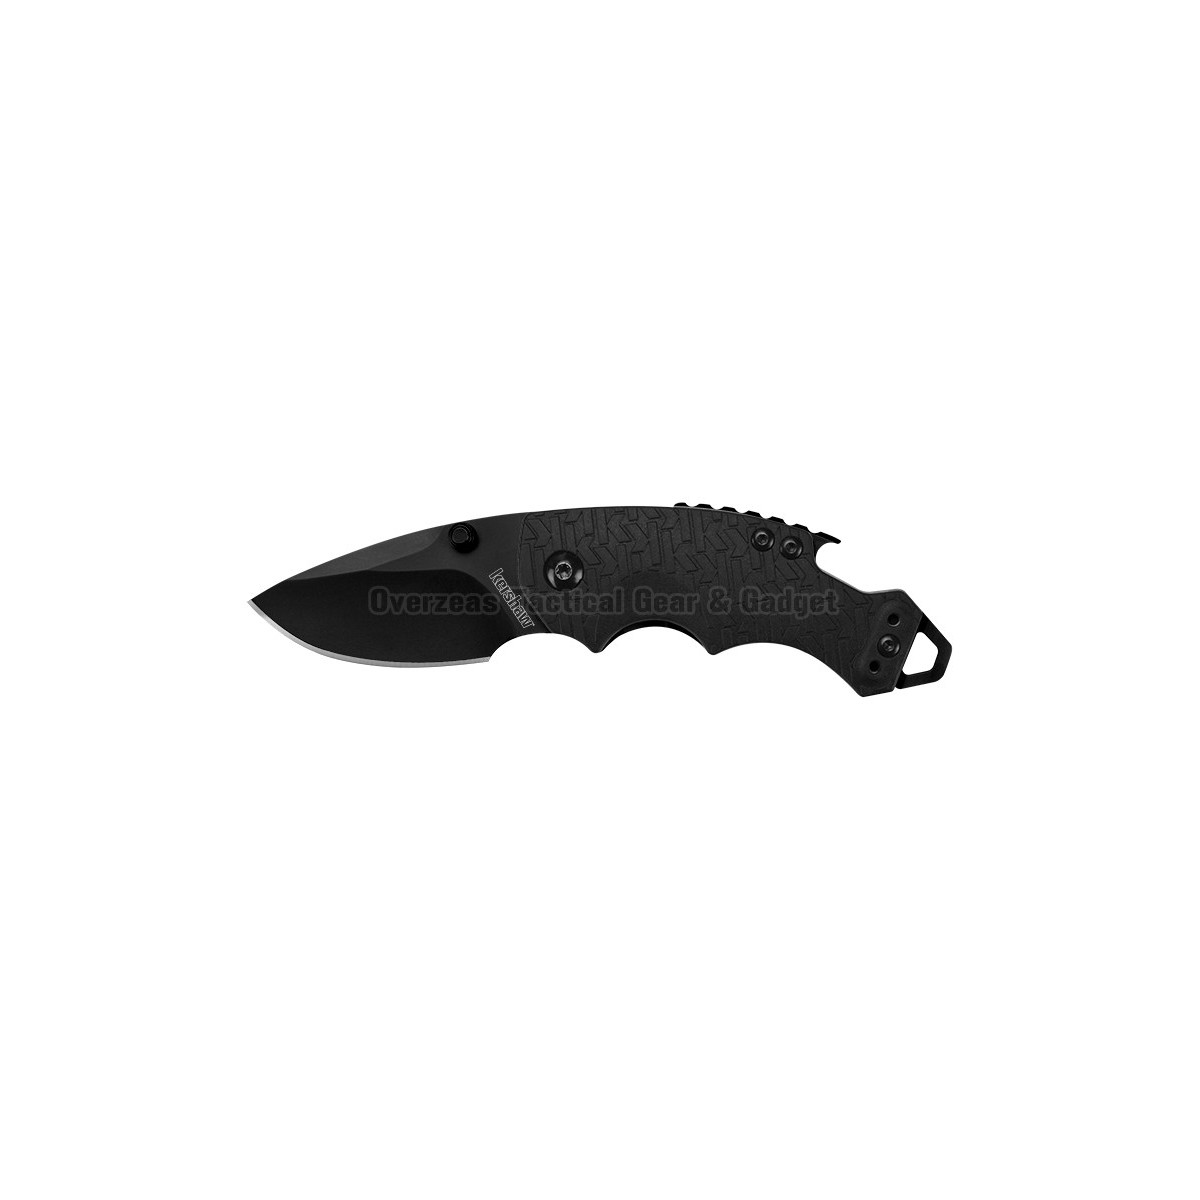 มีดพับ Kershaw Shuffle Knife Multi-Tool Black GFN (2.375" Black) 8700BLK